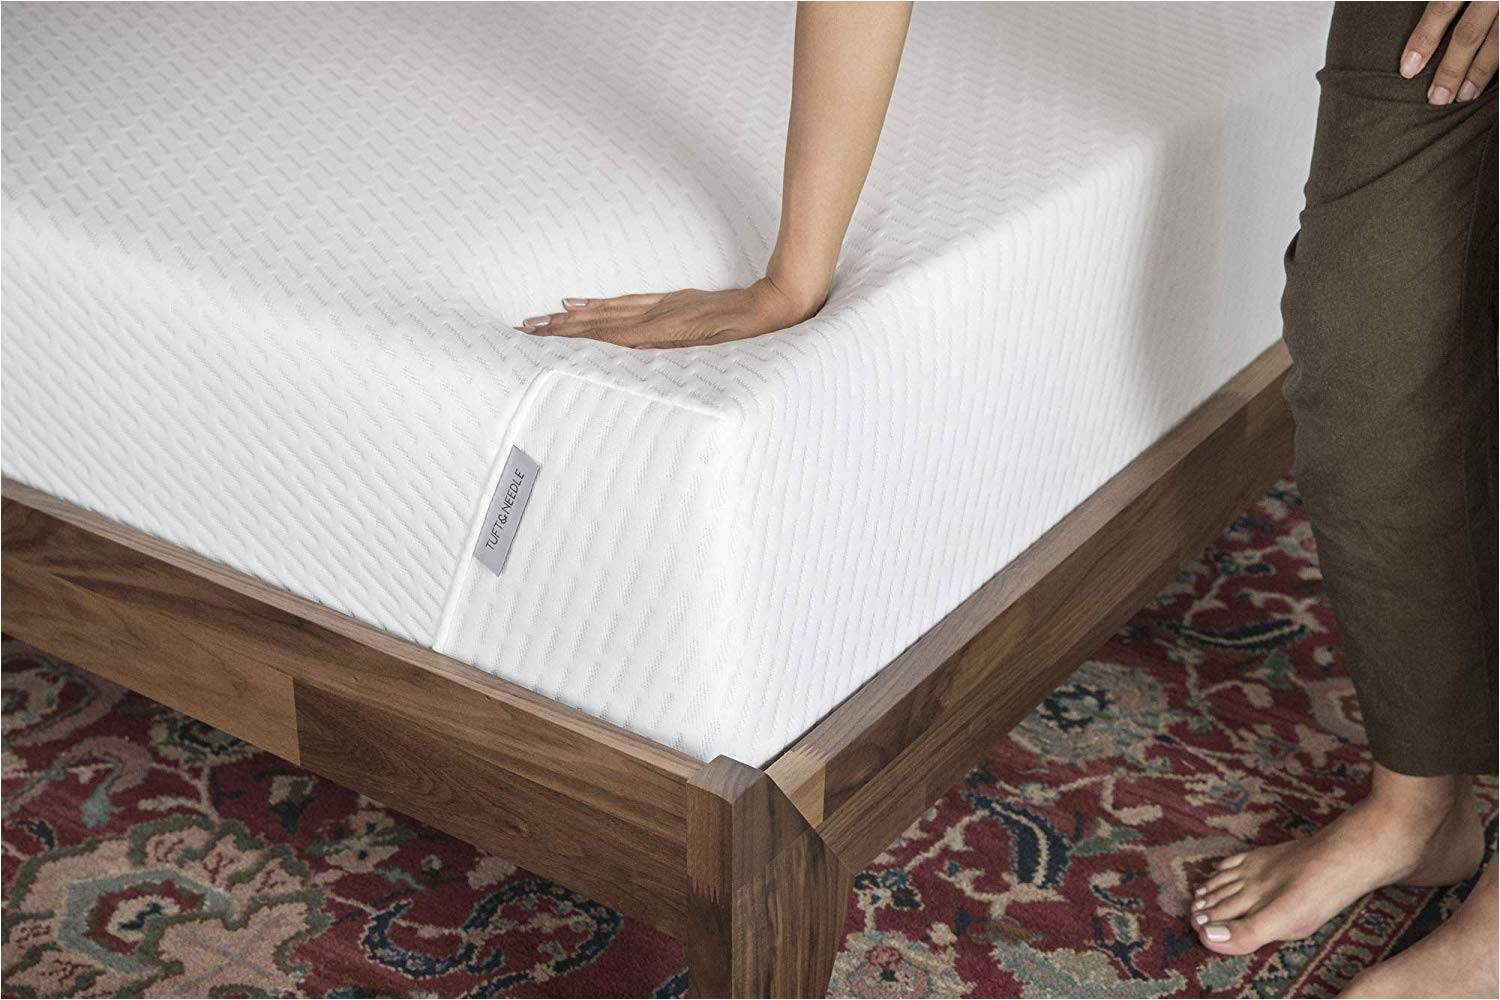 certi-pur foam mattress